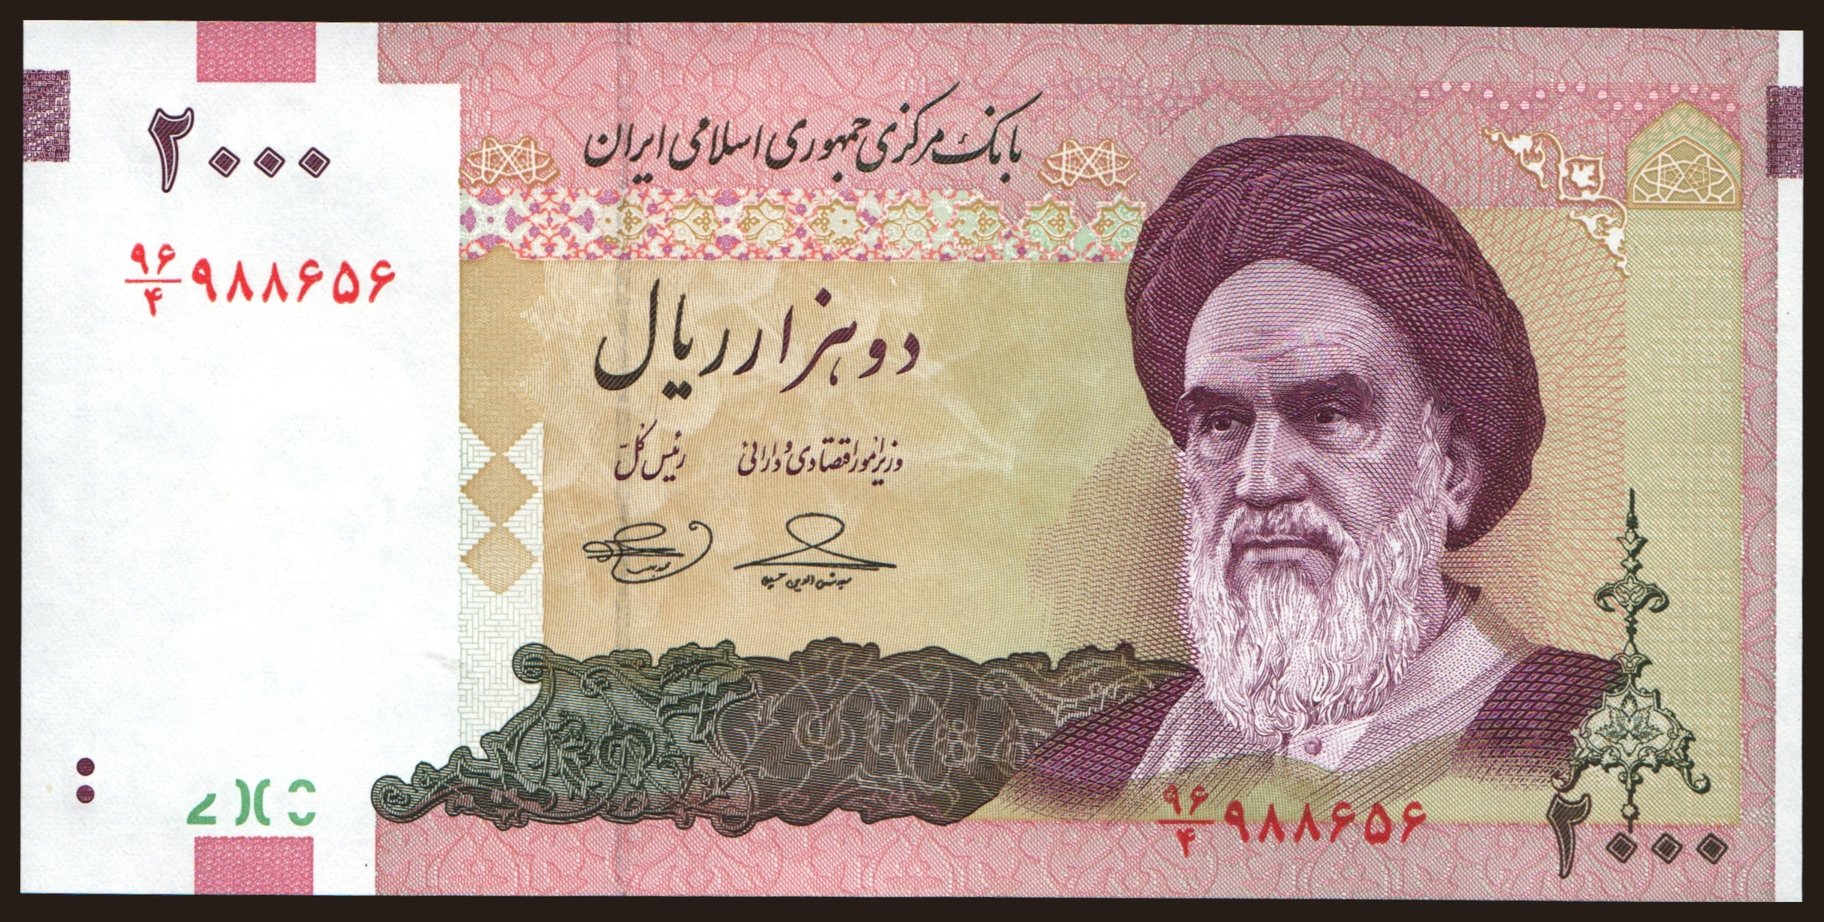 2000 rials, 2005